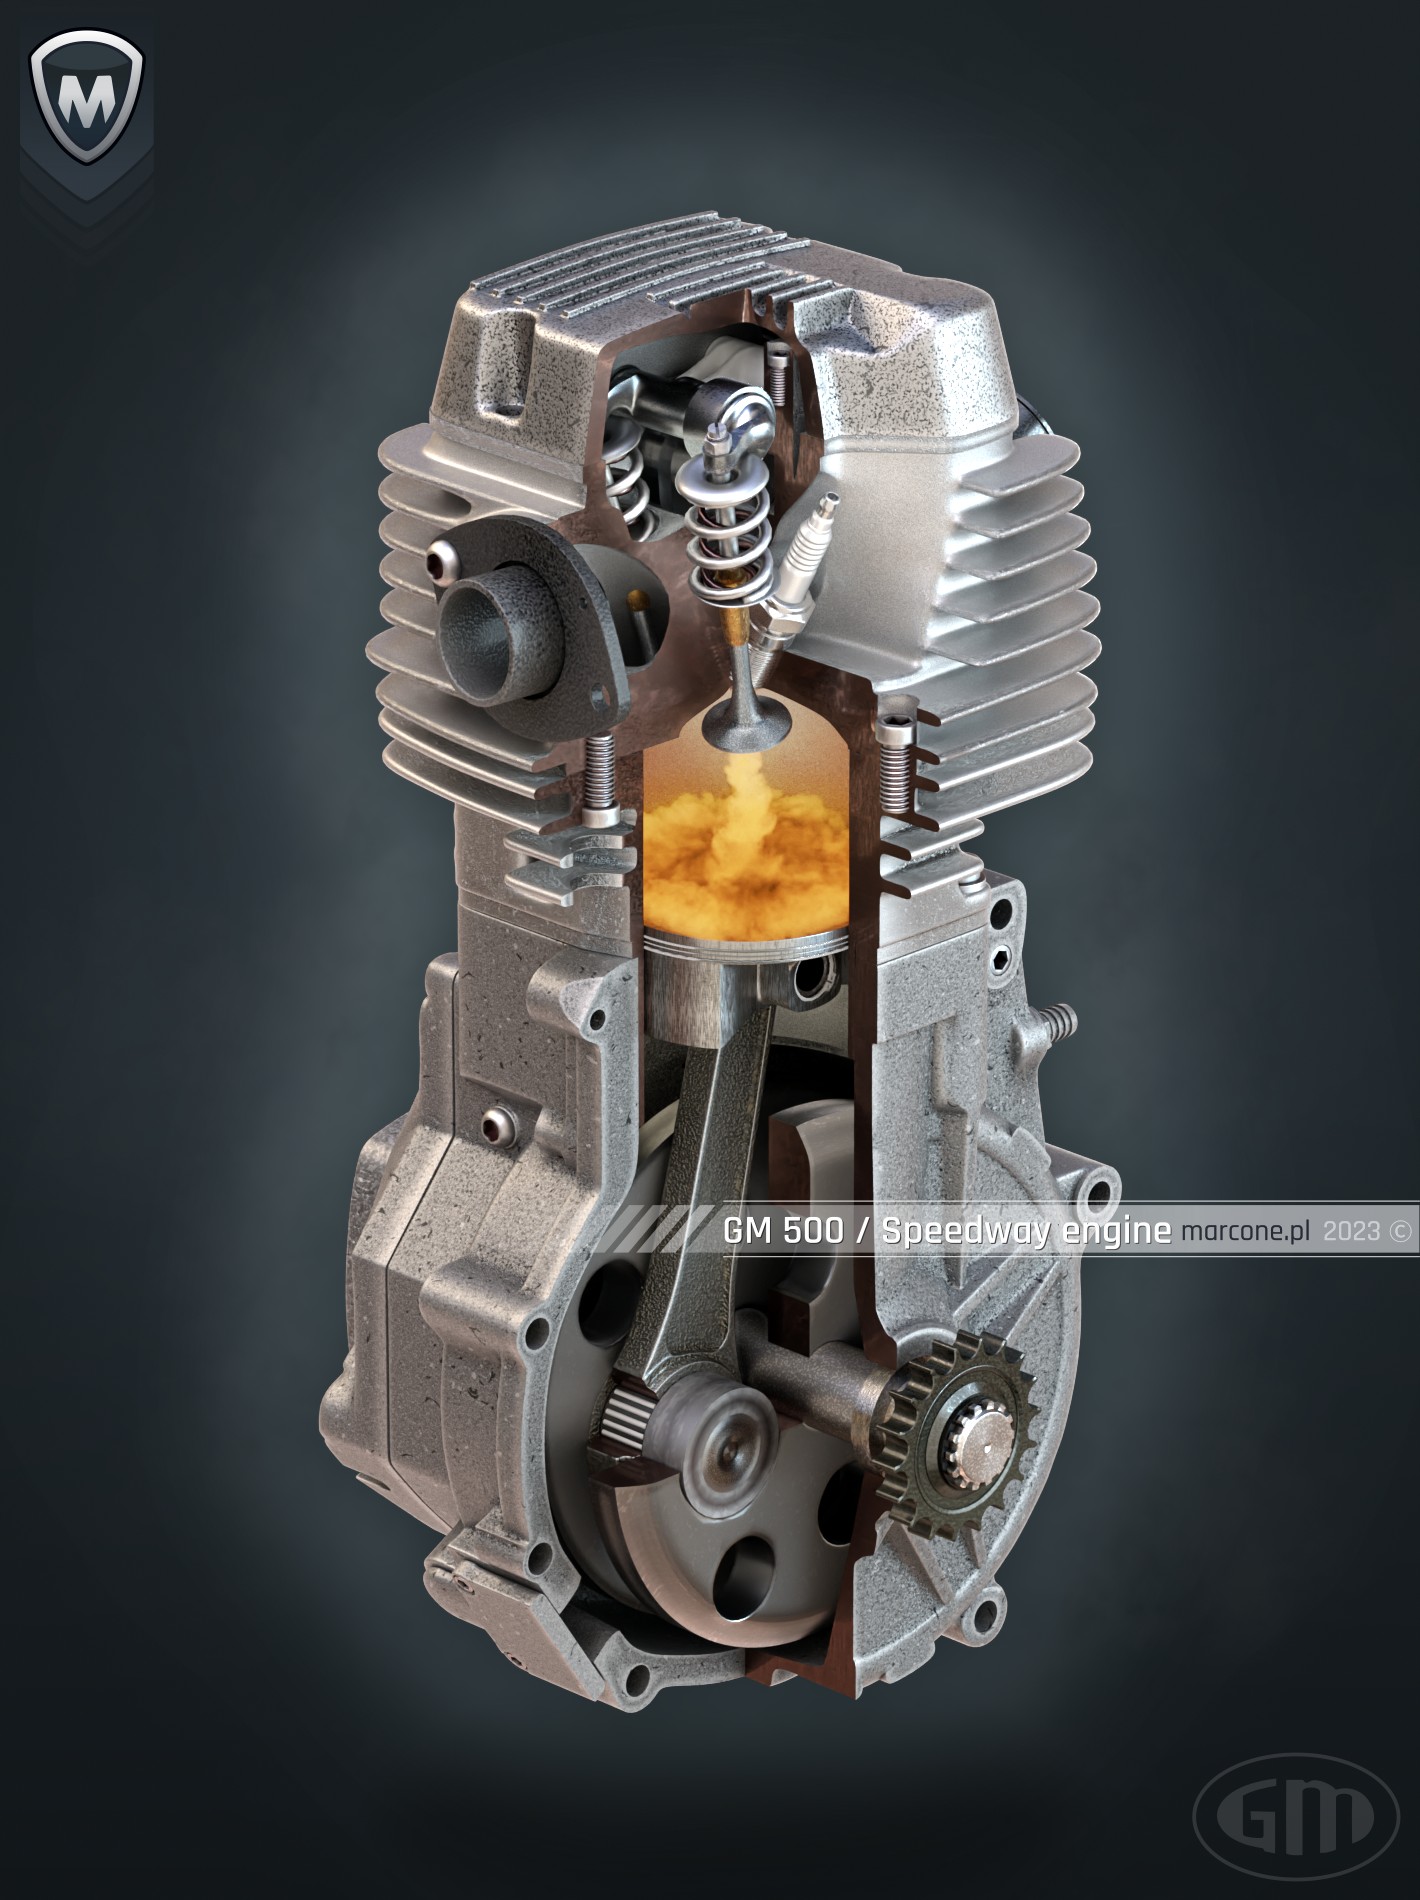 GM 500 / Speedway engine